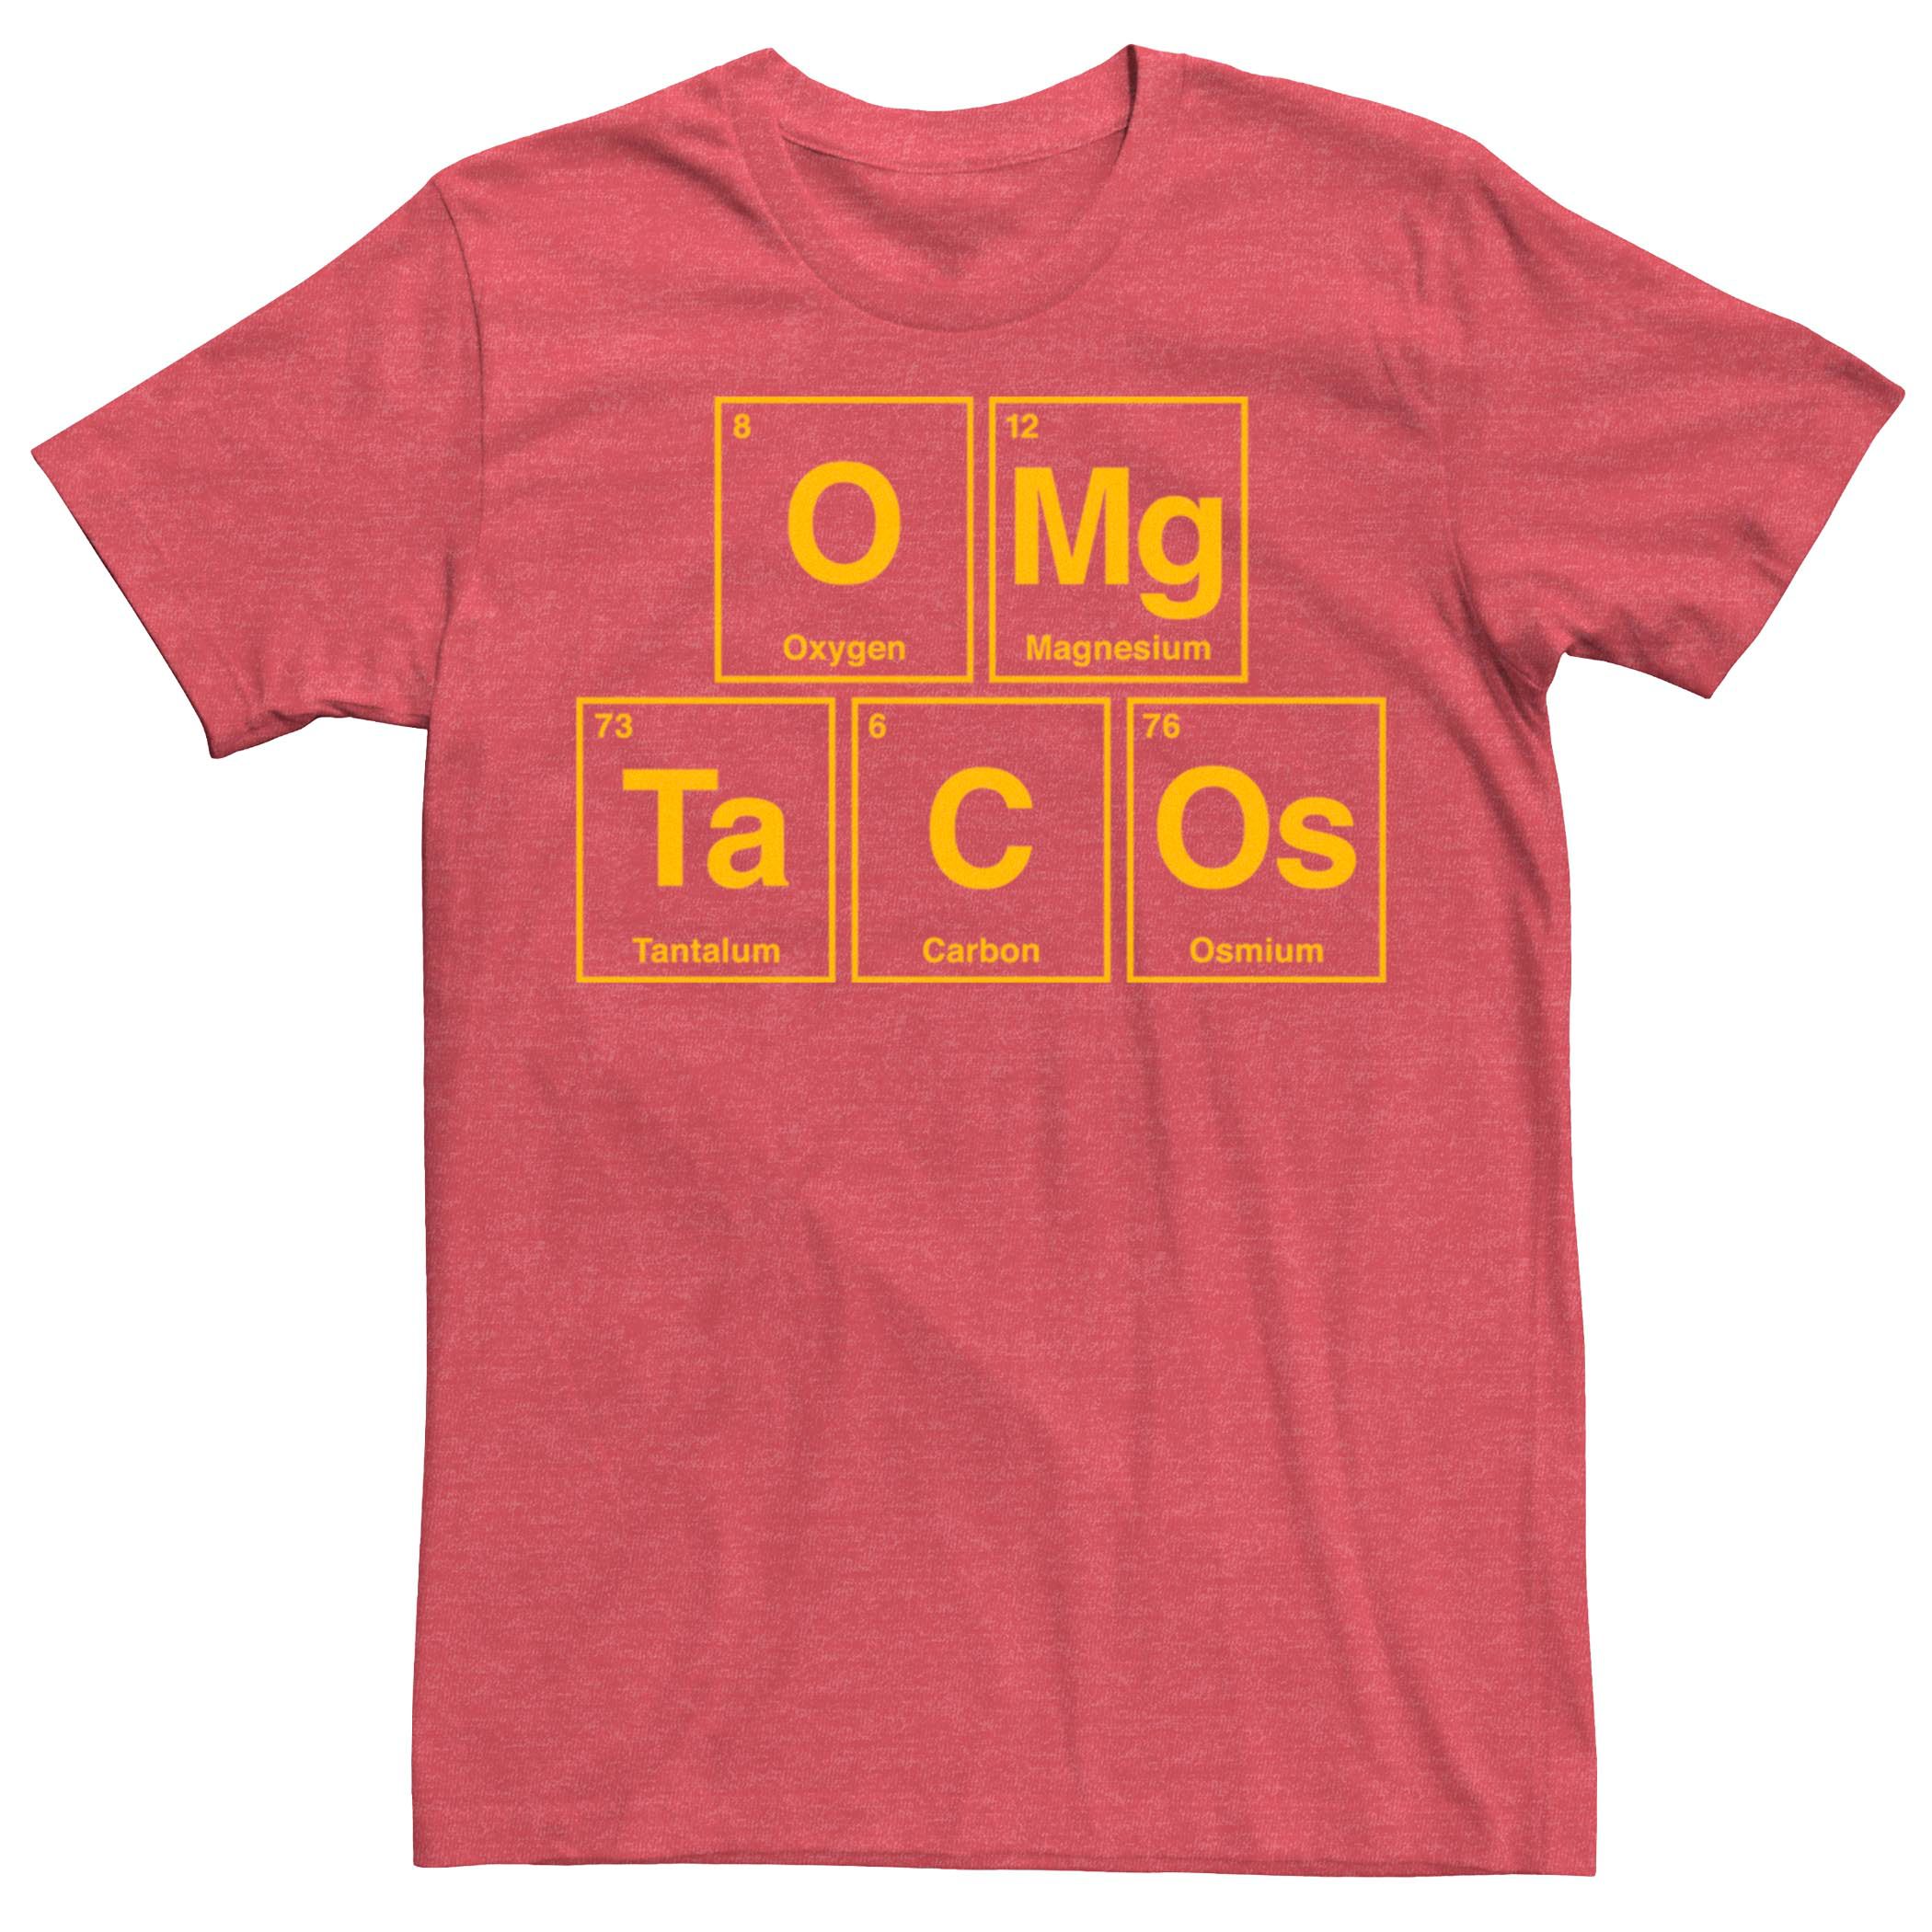 Мужская футболка OMG Tacos Element Fifth Sun мужская футболка mi tacos es mi tacos хизер блэк красный флаг